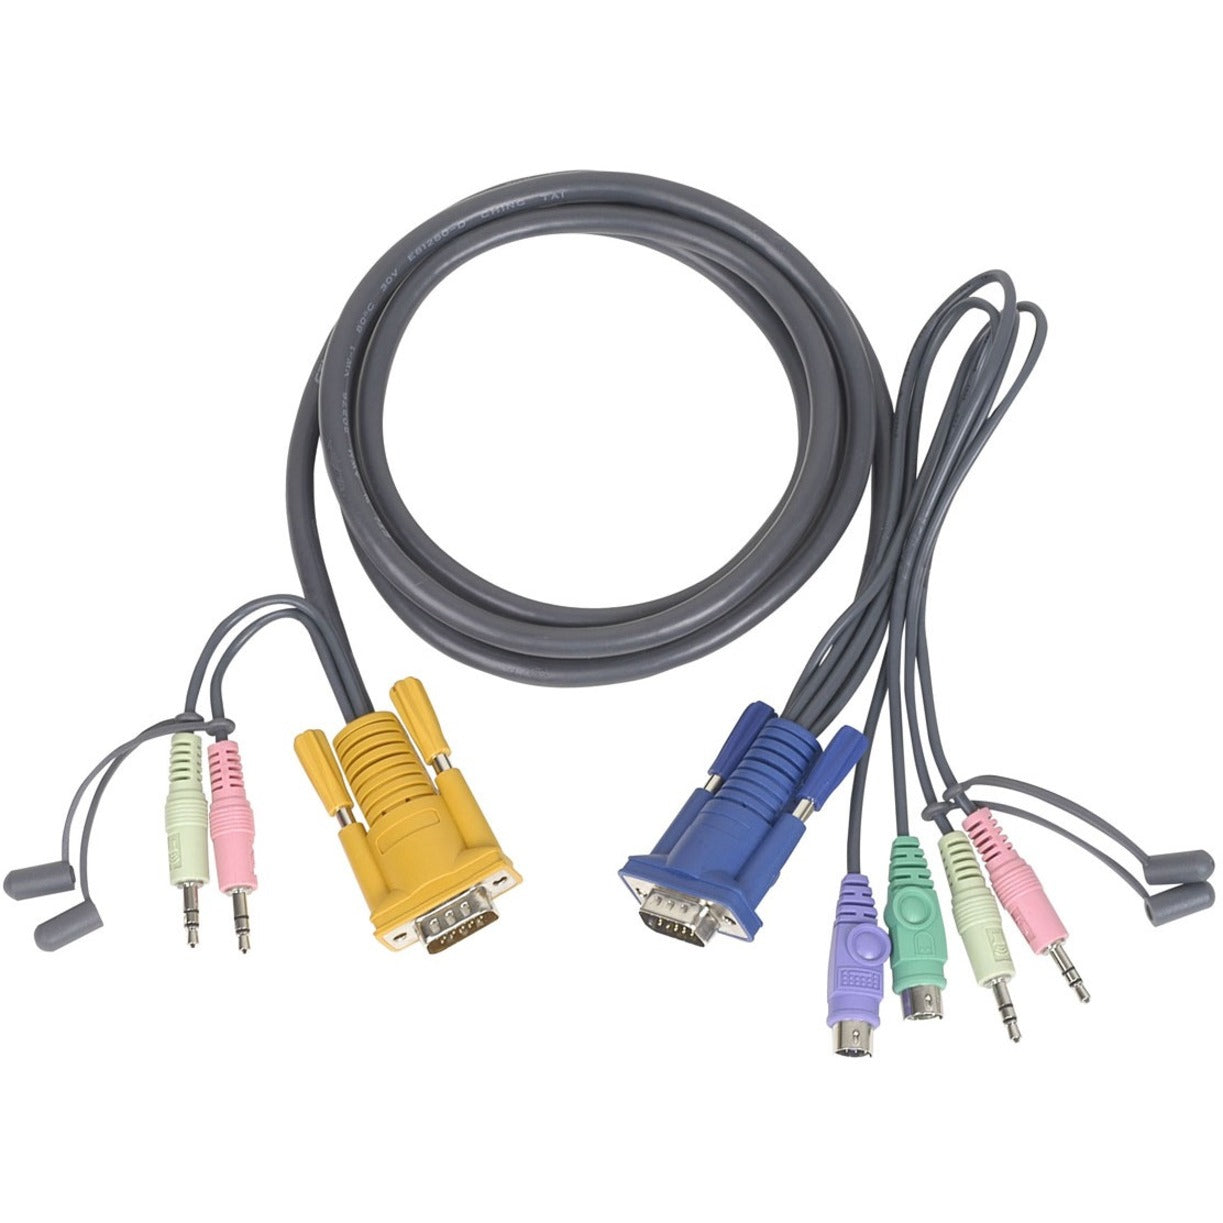 IOGEAR G2L5303P PS2 KVM Cable, 10 ft - Lifetime Warranty, Copper Conductor